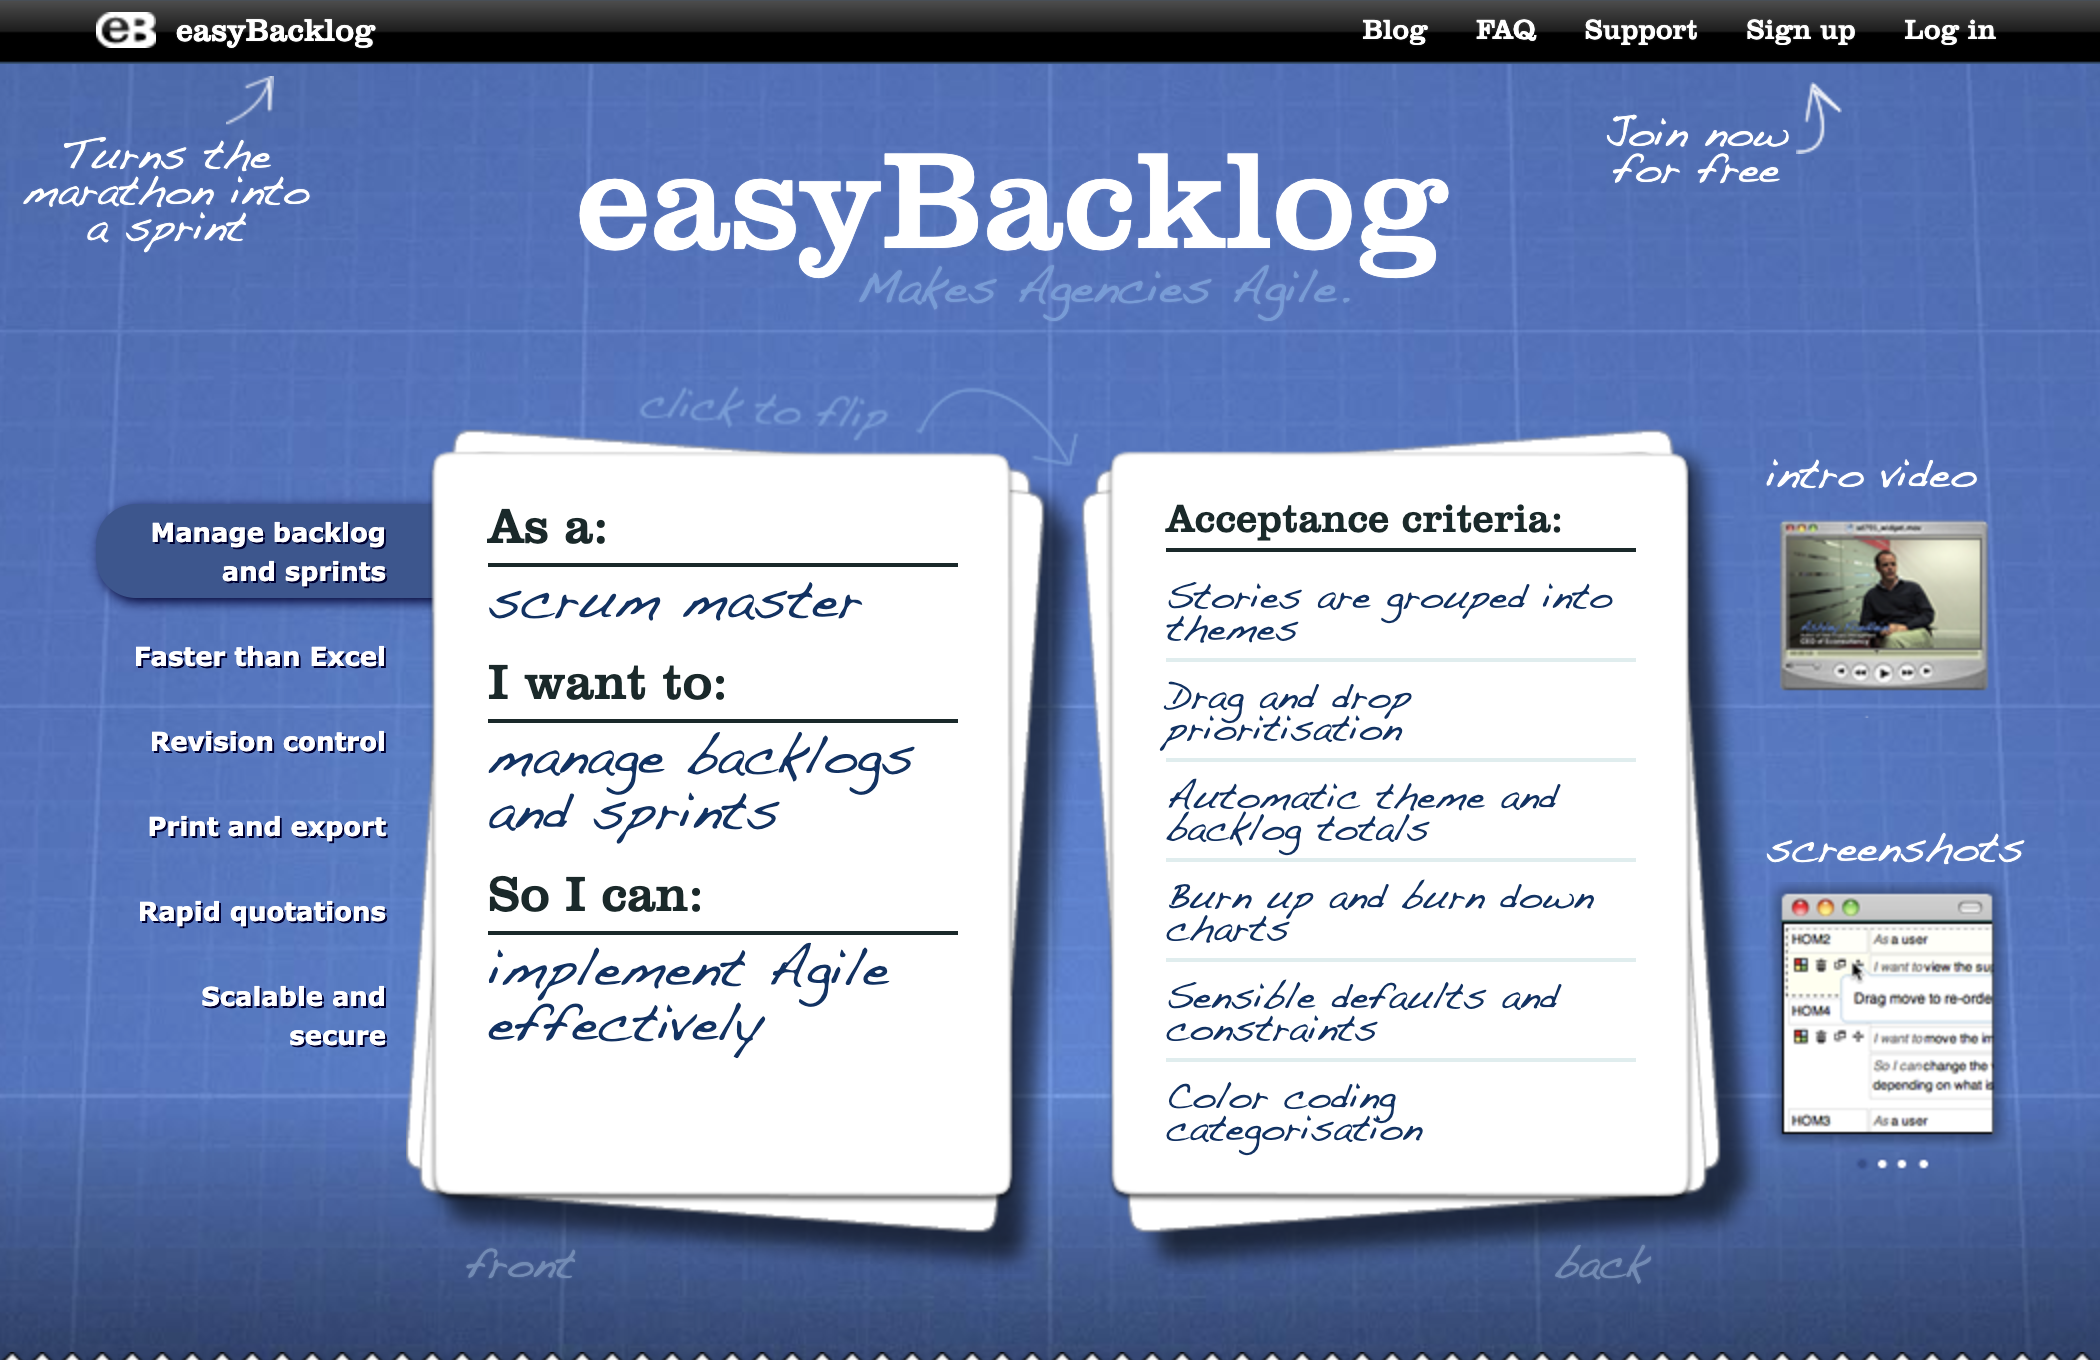 easyBacklog.com home page as at Aug 2022